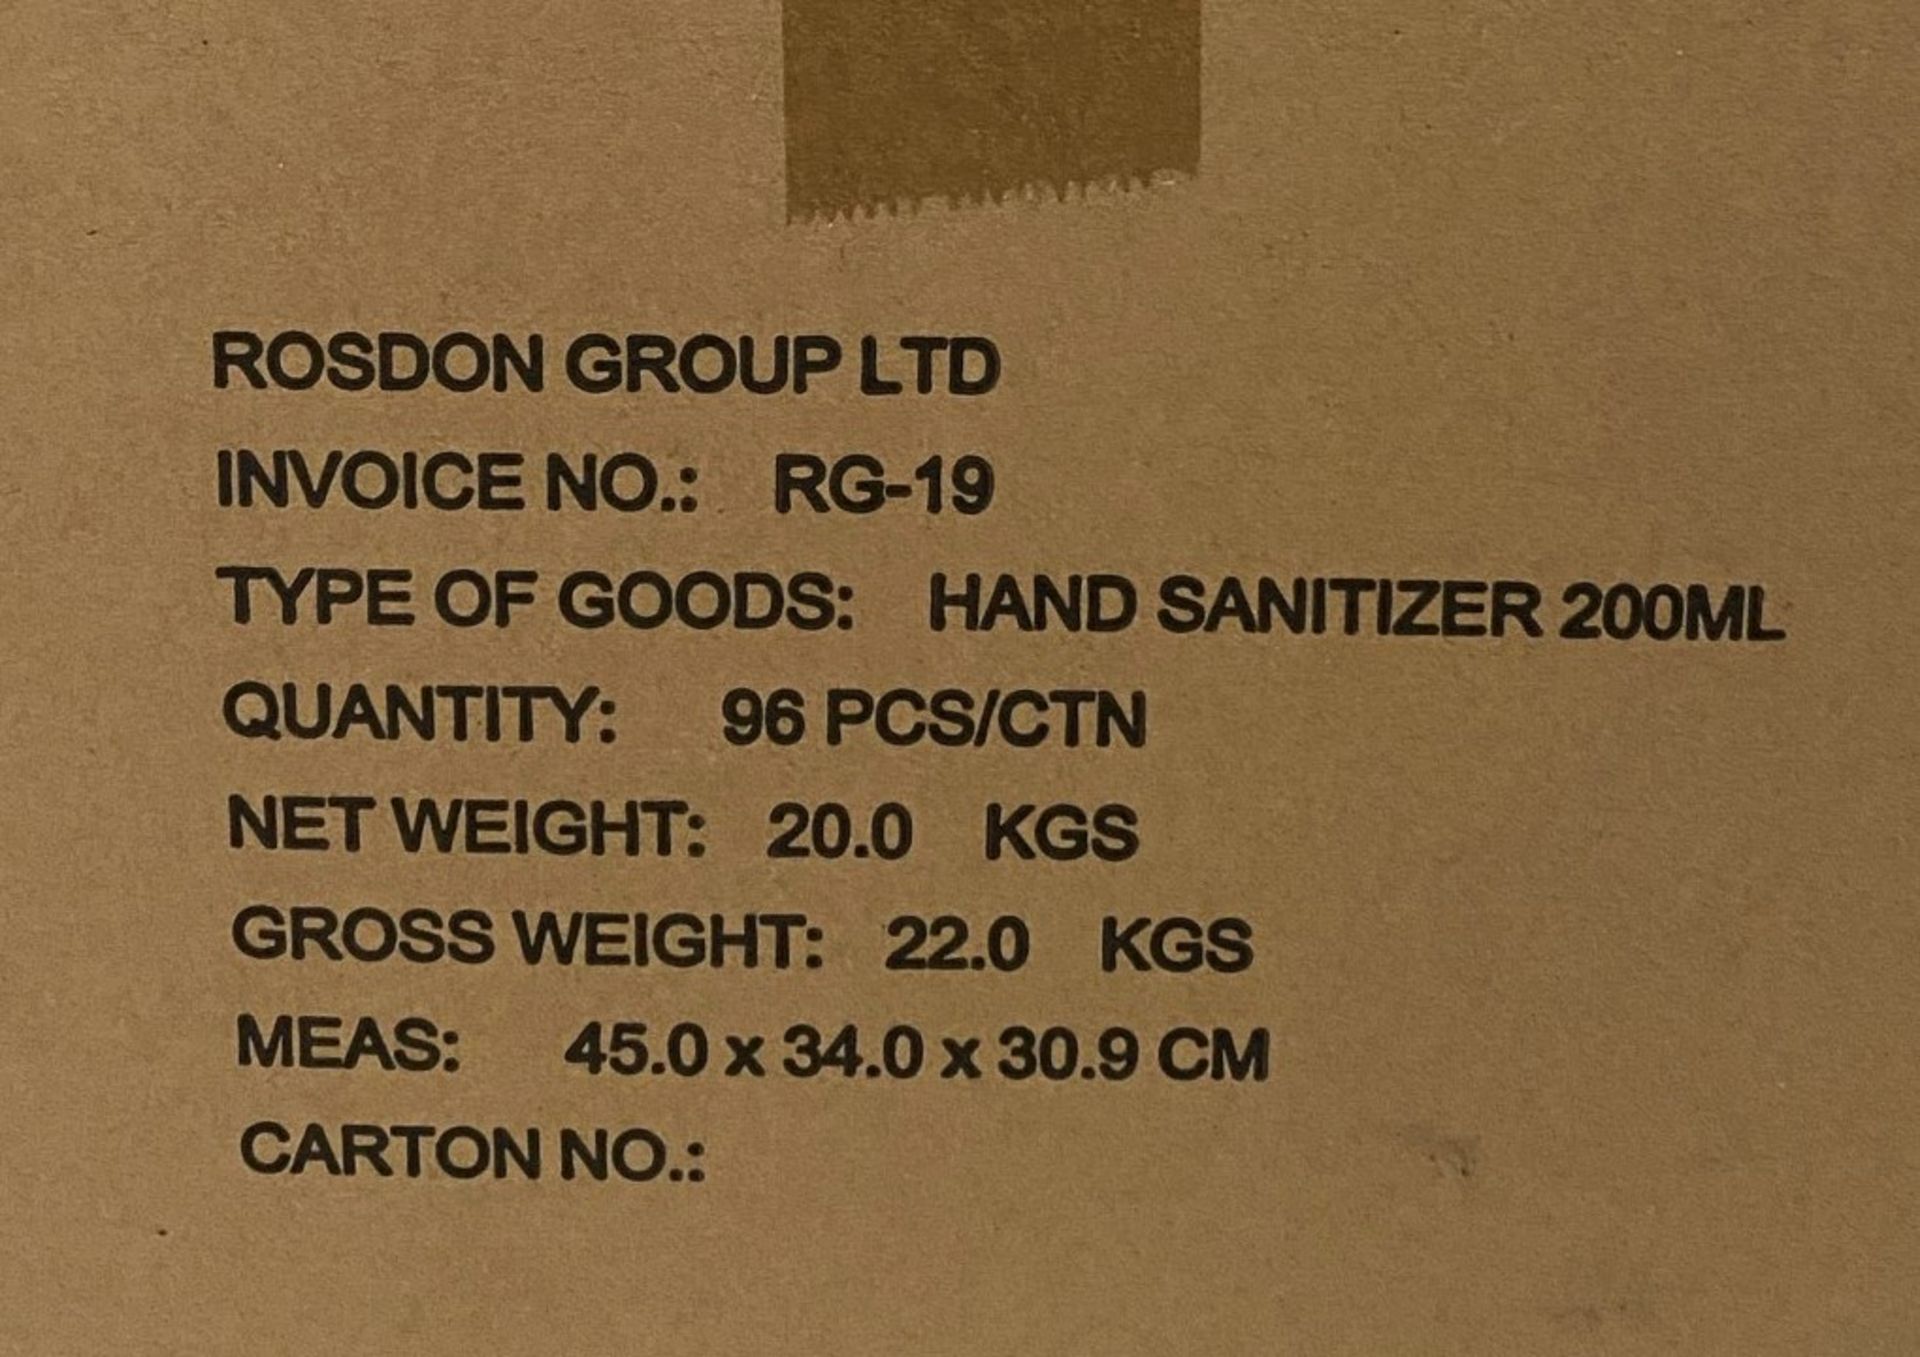 192 x 200ml pump top bottles of Rosdon Group UK hand sanitiser (Unlabelled clear plastic bottles) - - Image 4 of 5